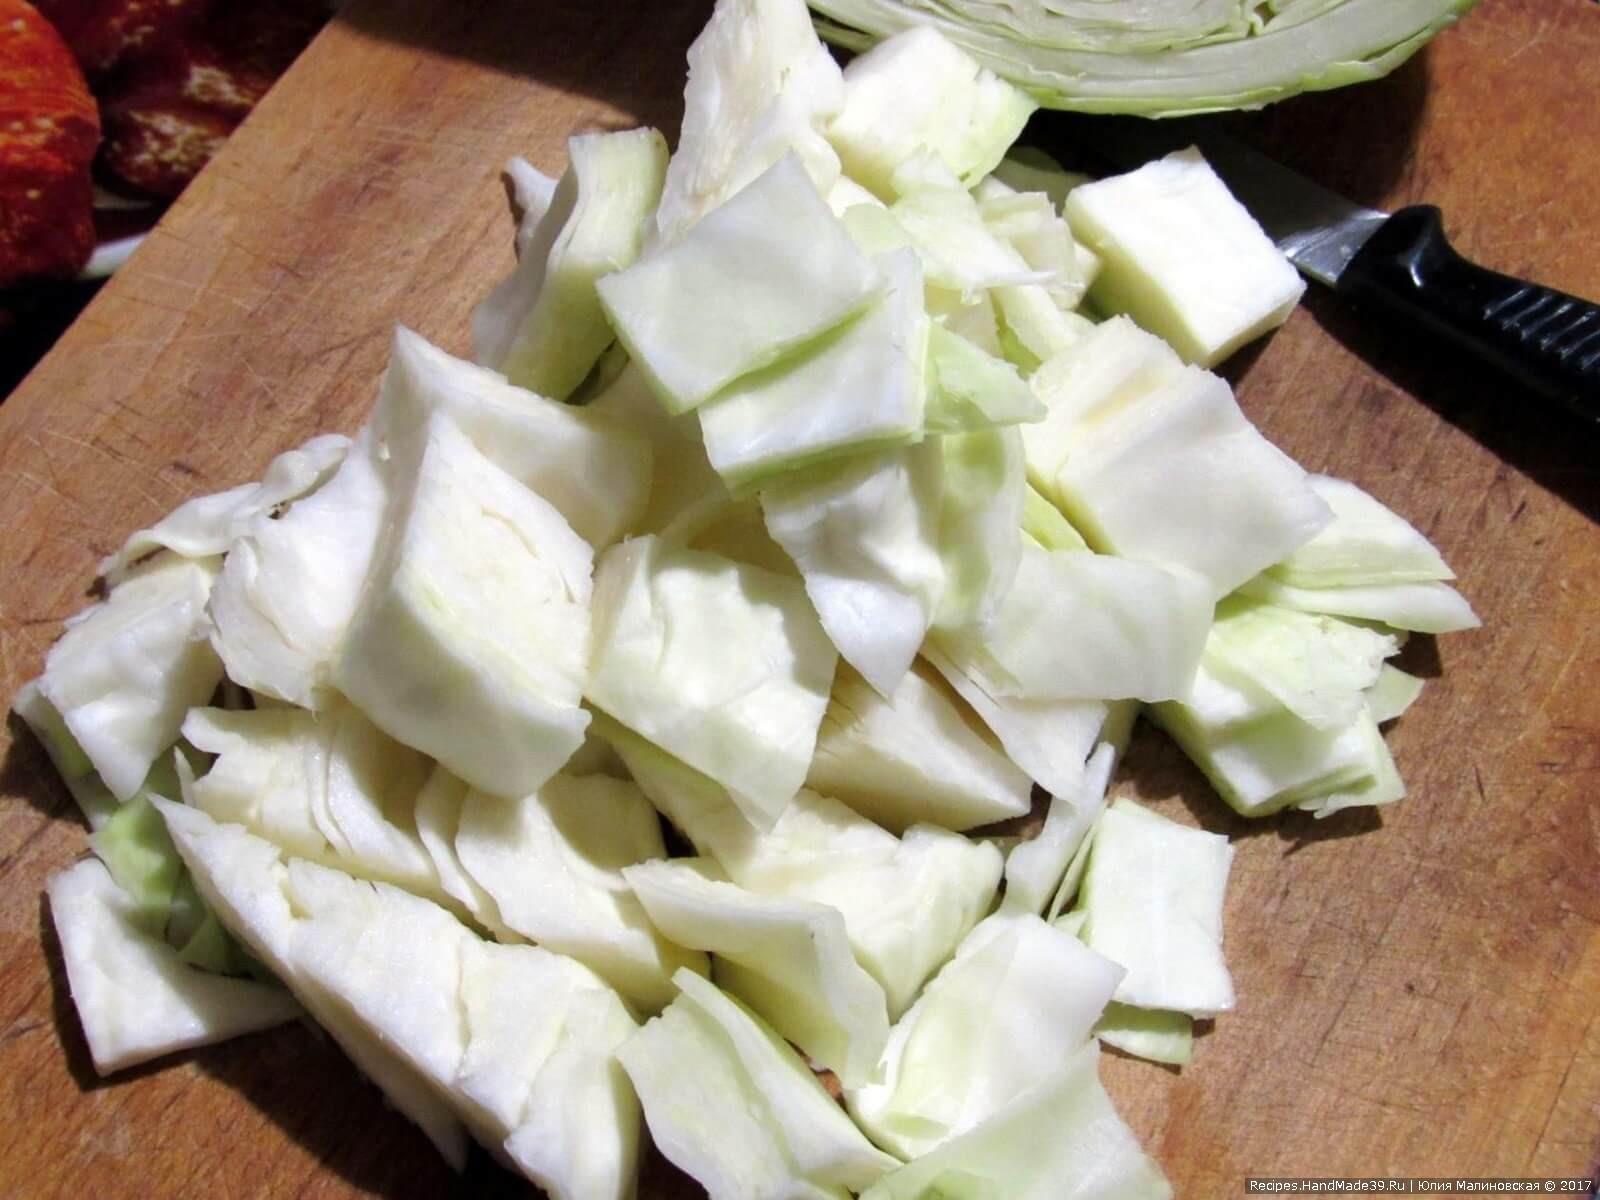 Приготовление капусты: rапусту нарезать квадратиками примерно 2 см на 2 см